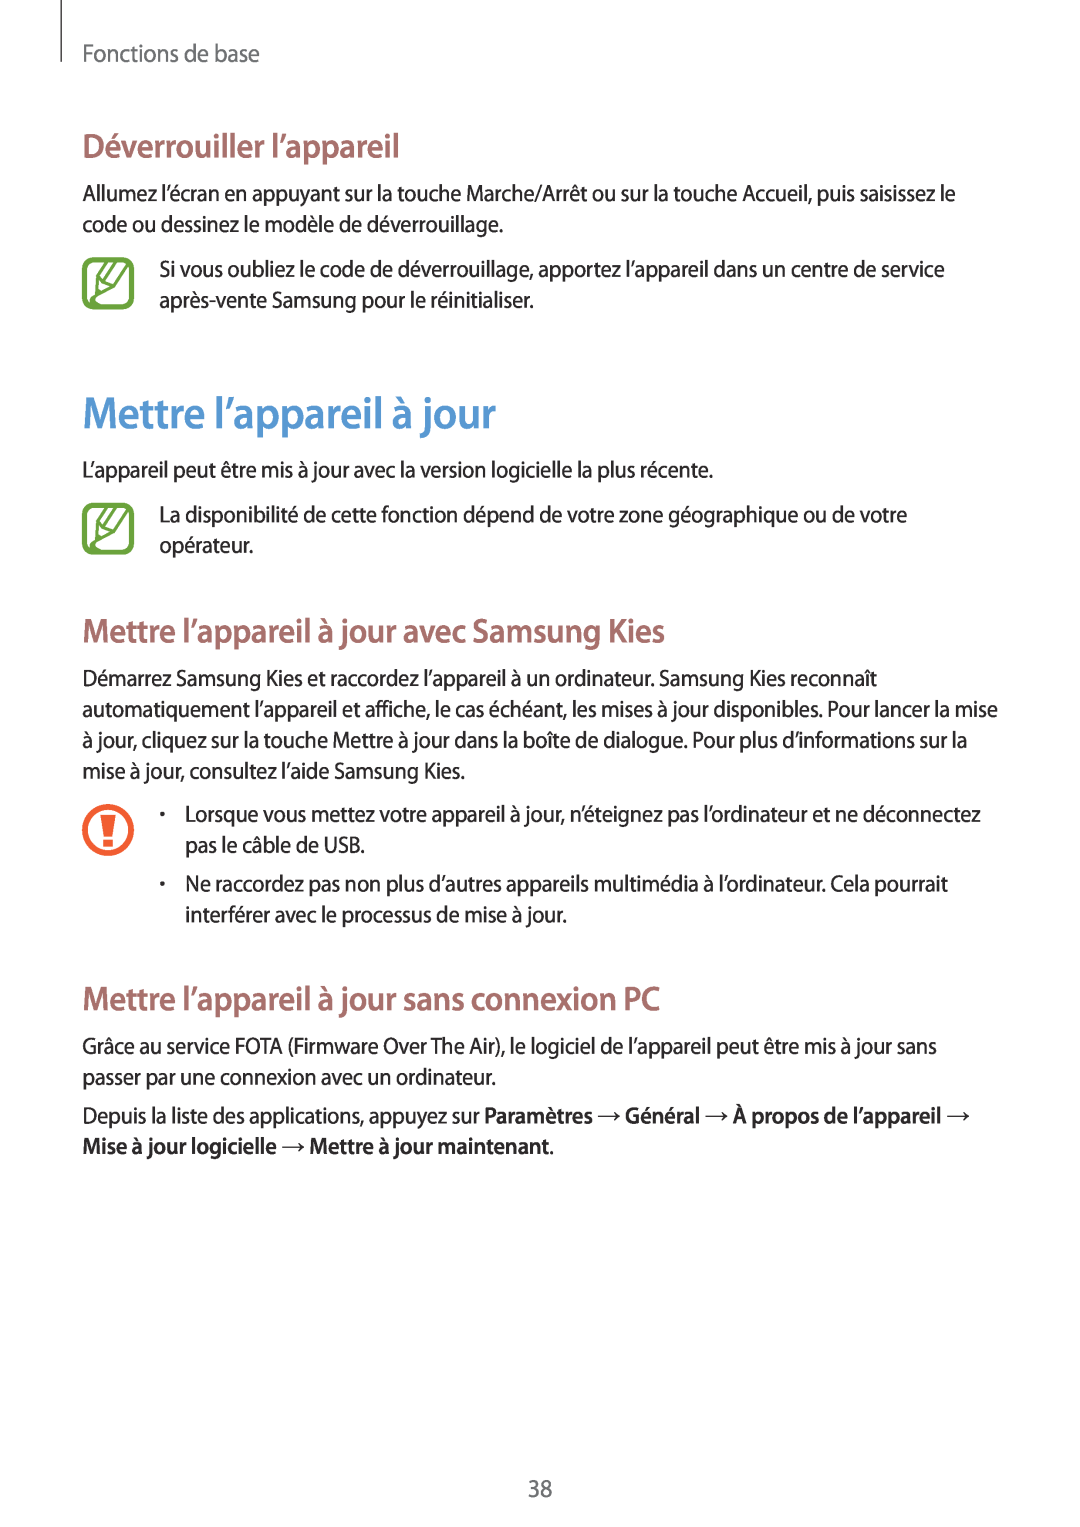 Samsung SM-T530NYKAXEF manual Déverrouiller l’appareil, Mettre l’appareil à jour avec Samsung Kies, Fonctions de base 